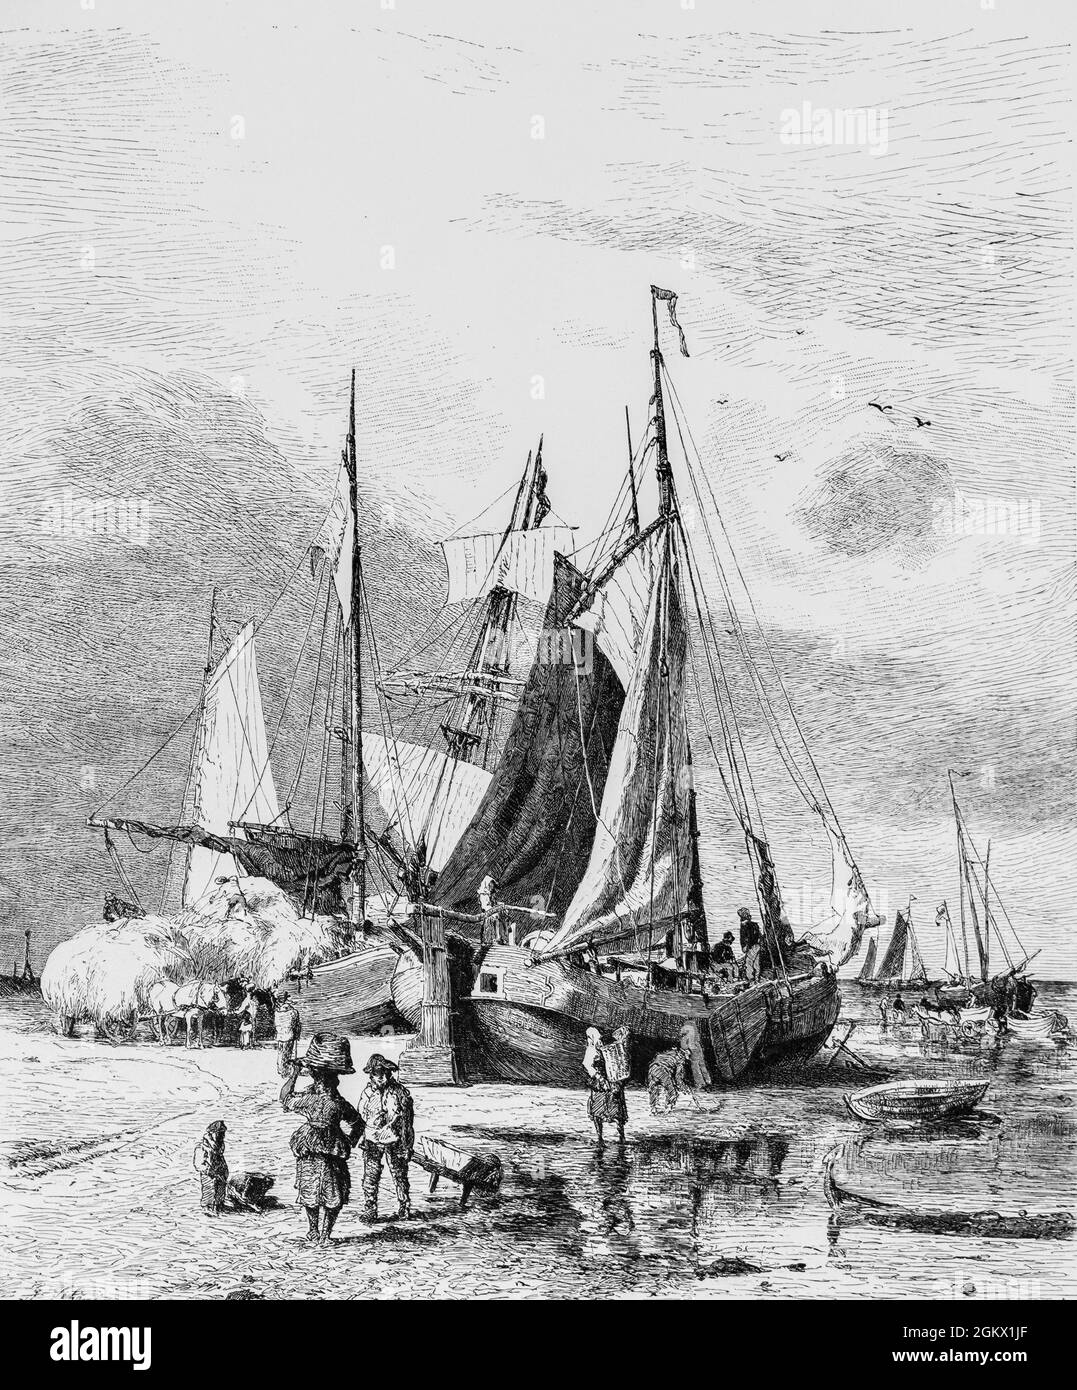 Tjalken sono vecchie imbarcazioni a fondo piatto che trasportano prodotti esclusivamente per servizi costieri, in particolare nel Mare del Nord di wadden, Germania, illustrazione 1880, Foto Stock